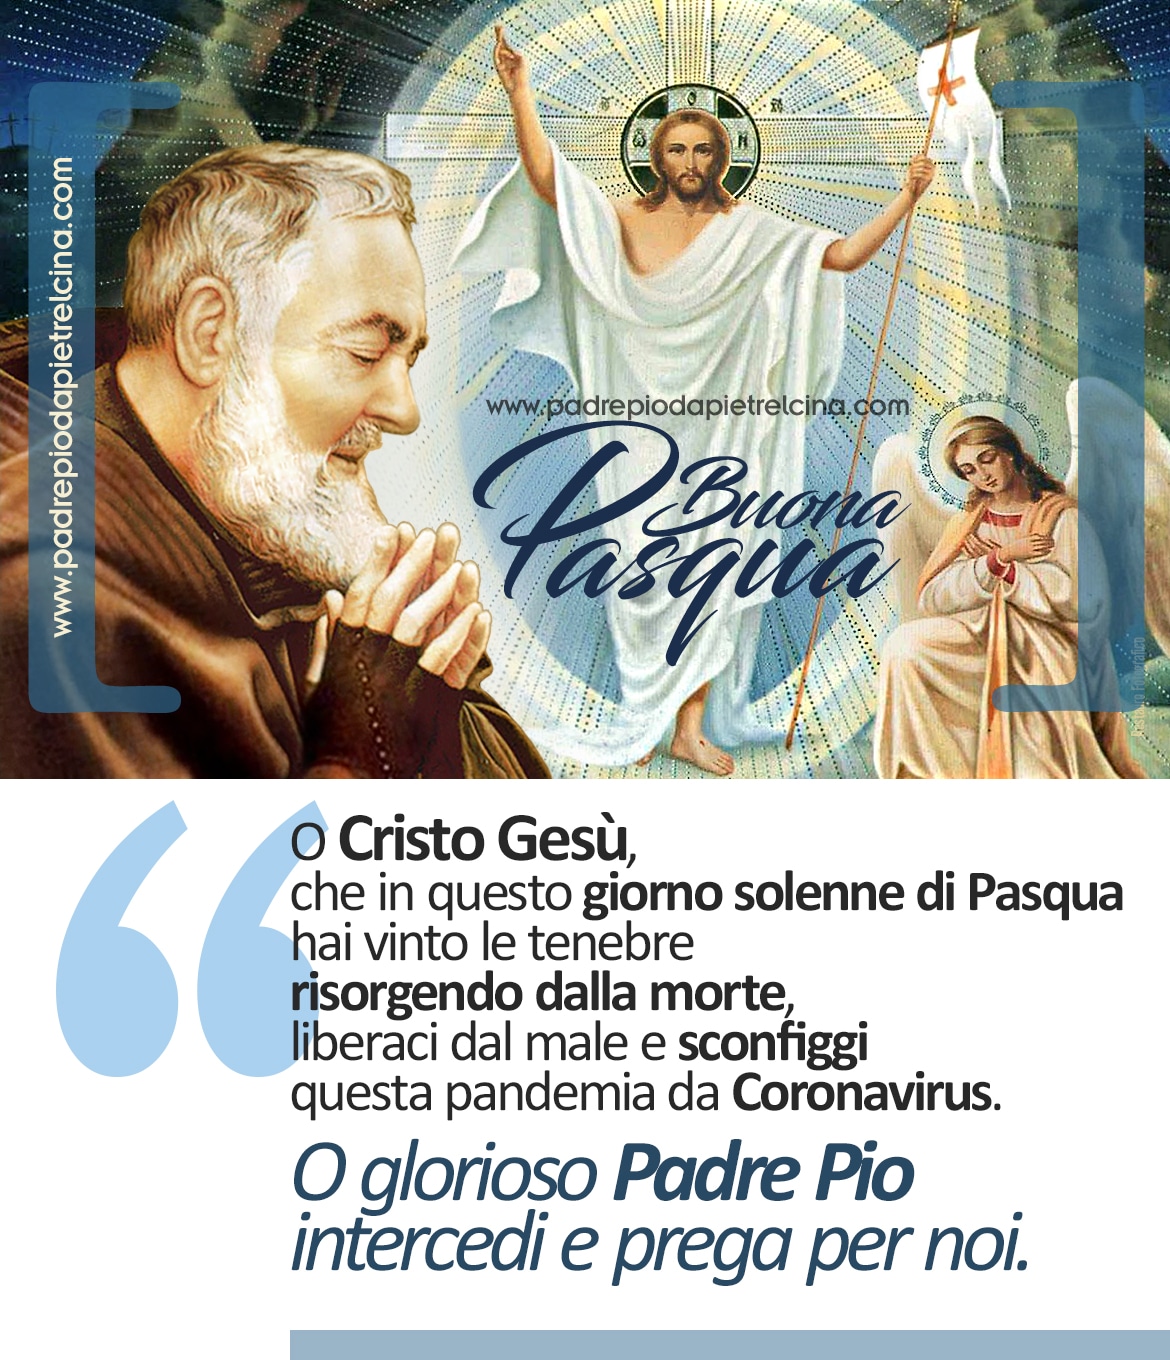 Buona Pasqua O Glorioso Padre Pio Intercedi E Prega Per Noi